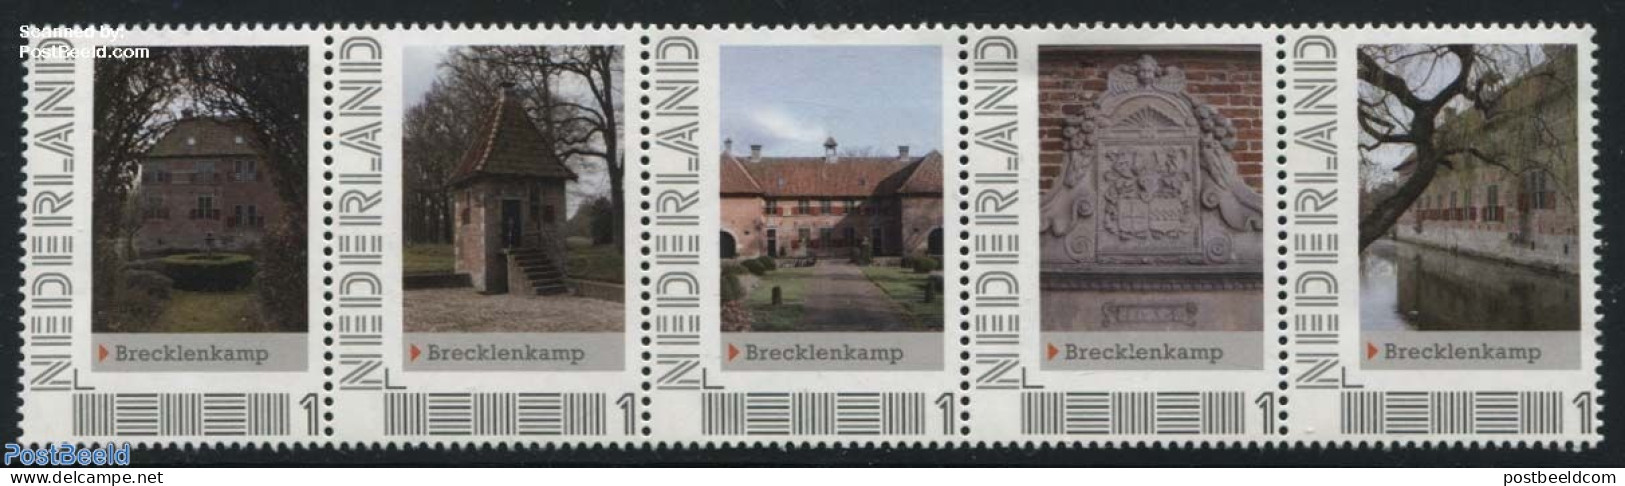 Netherlands - Personal Stamps TNT/PNL 2012 Brecklenkamp 5v [::::], Mint NH, Castles & Fortifications - Castelli